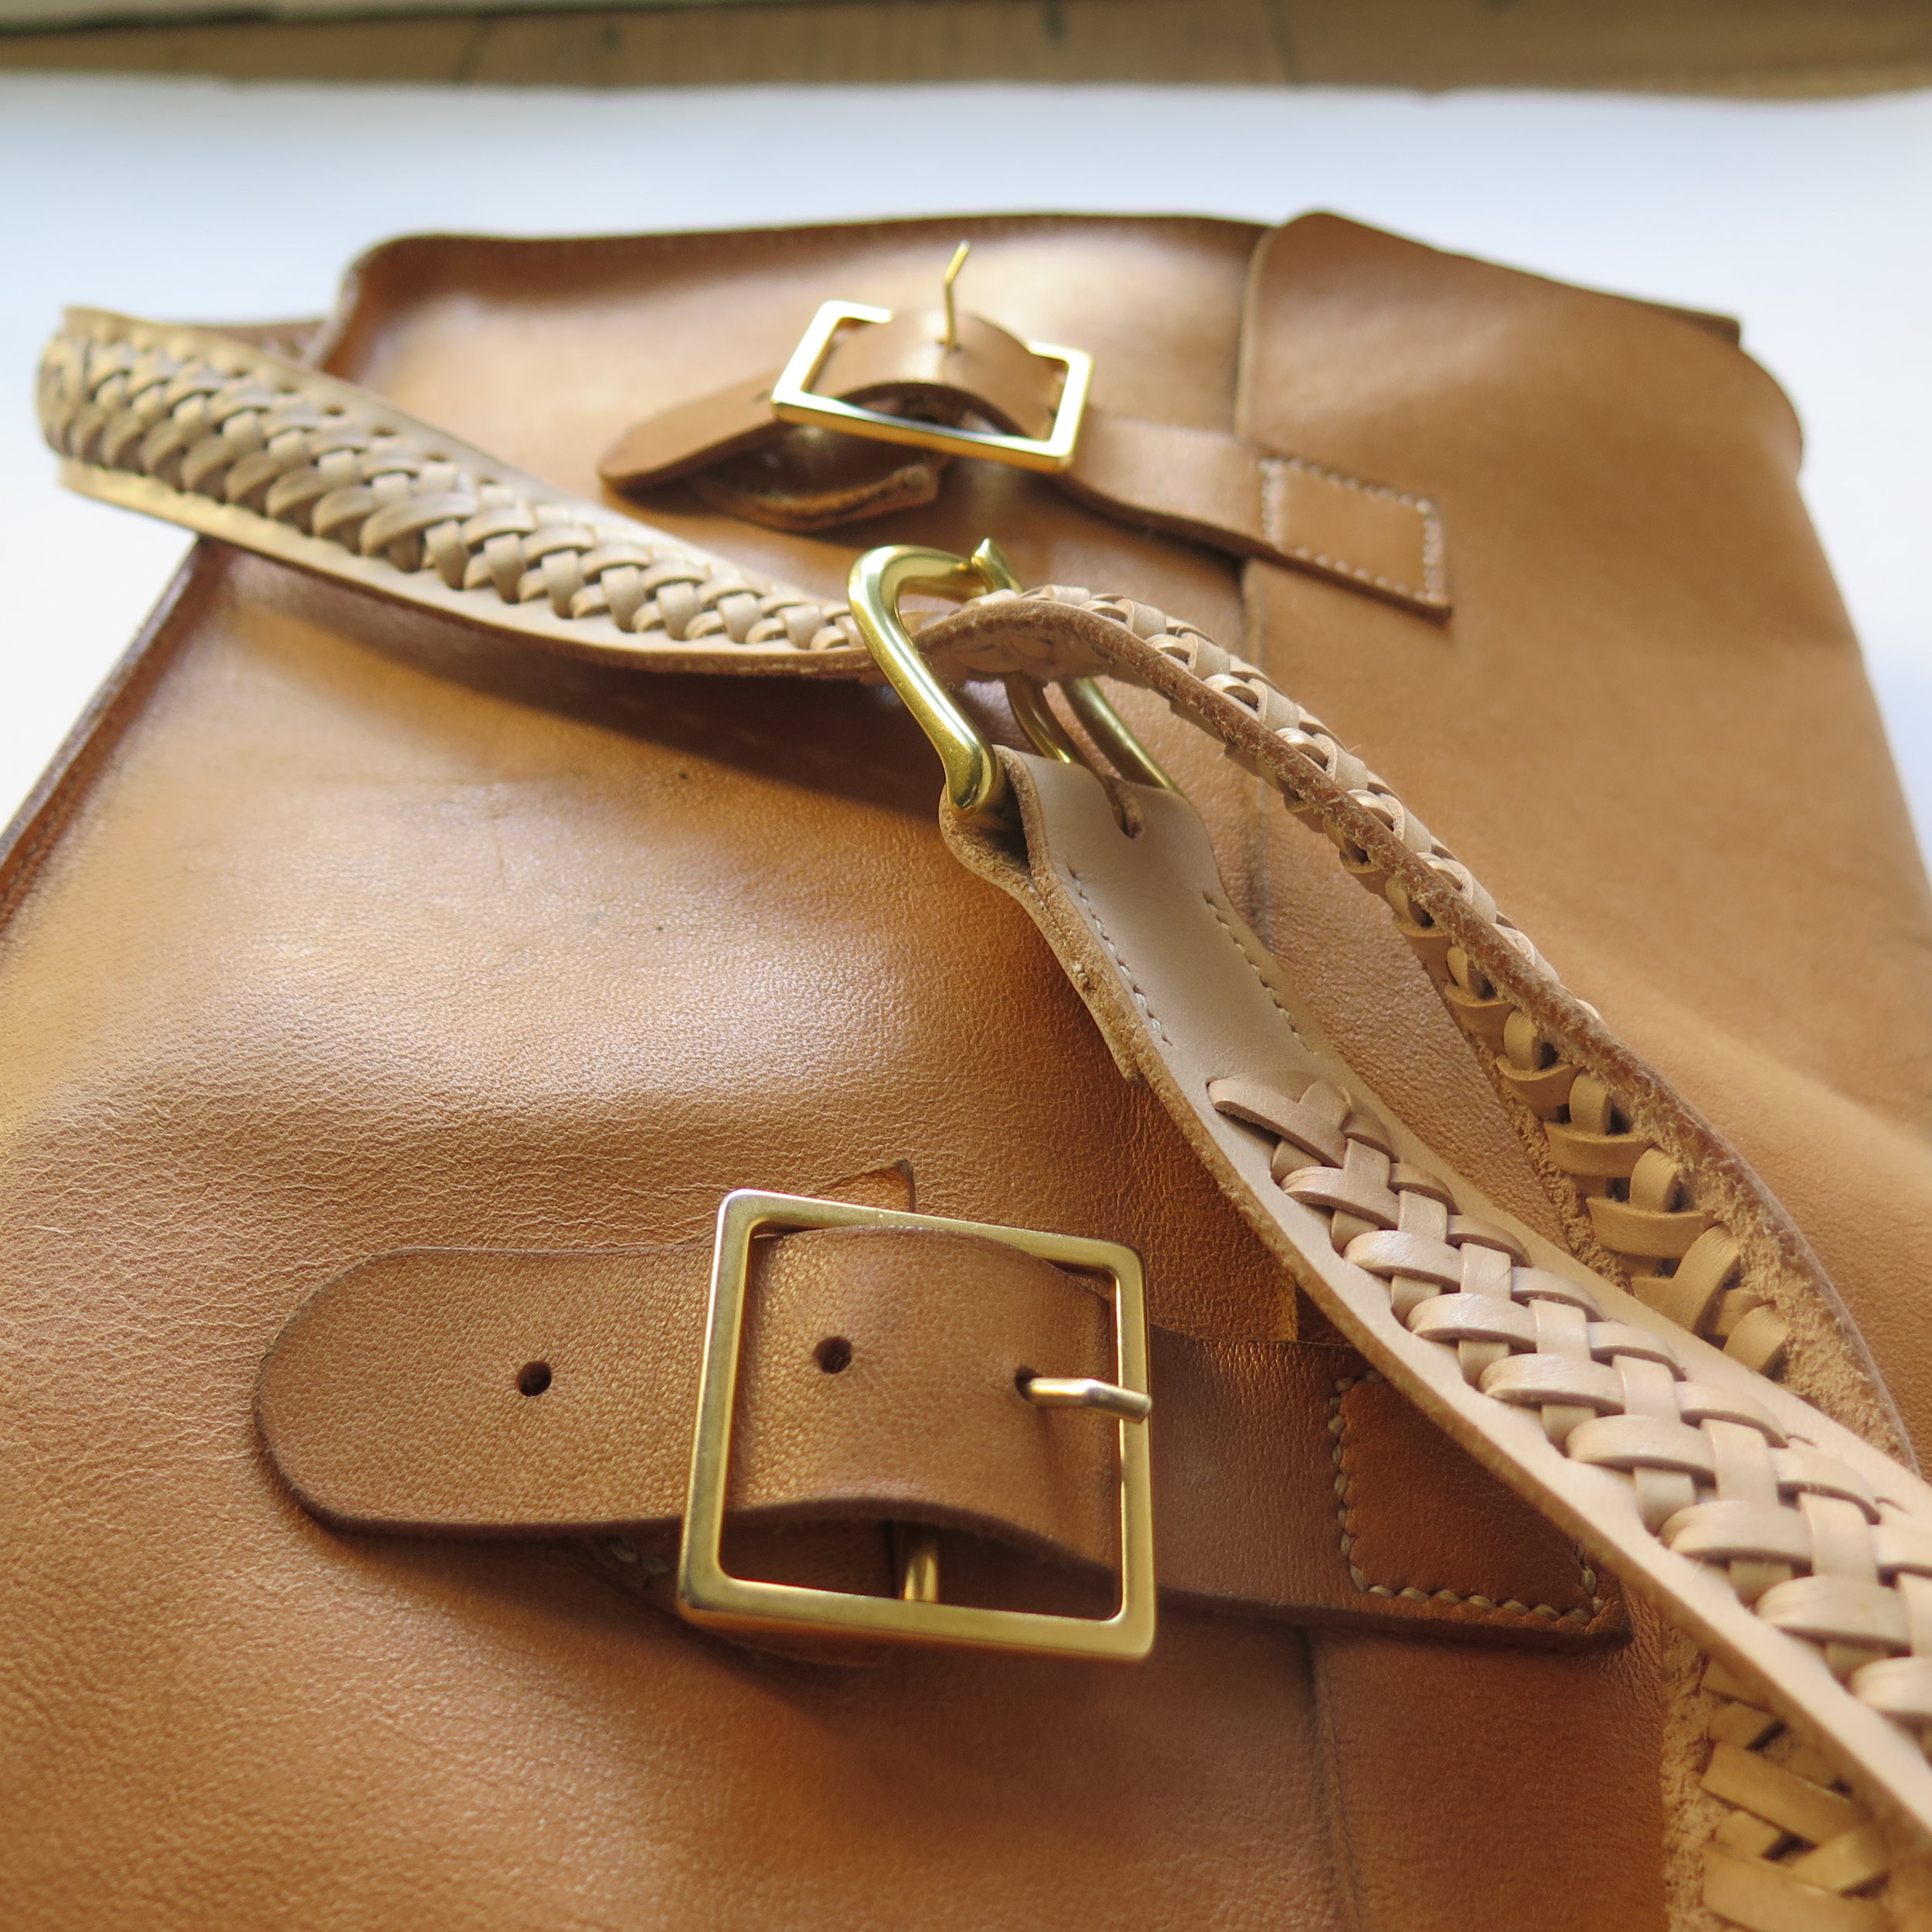 Saddle Stitch Leather Backpack